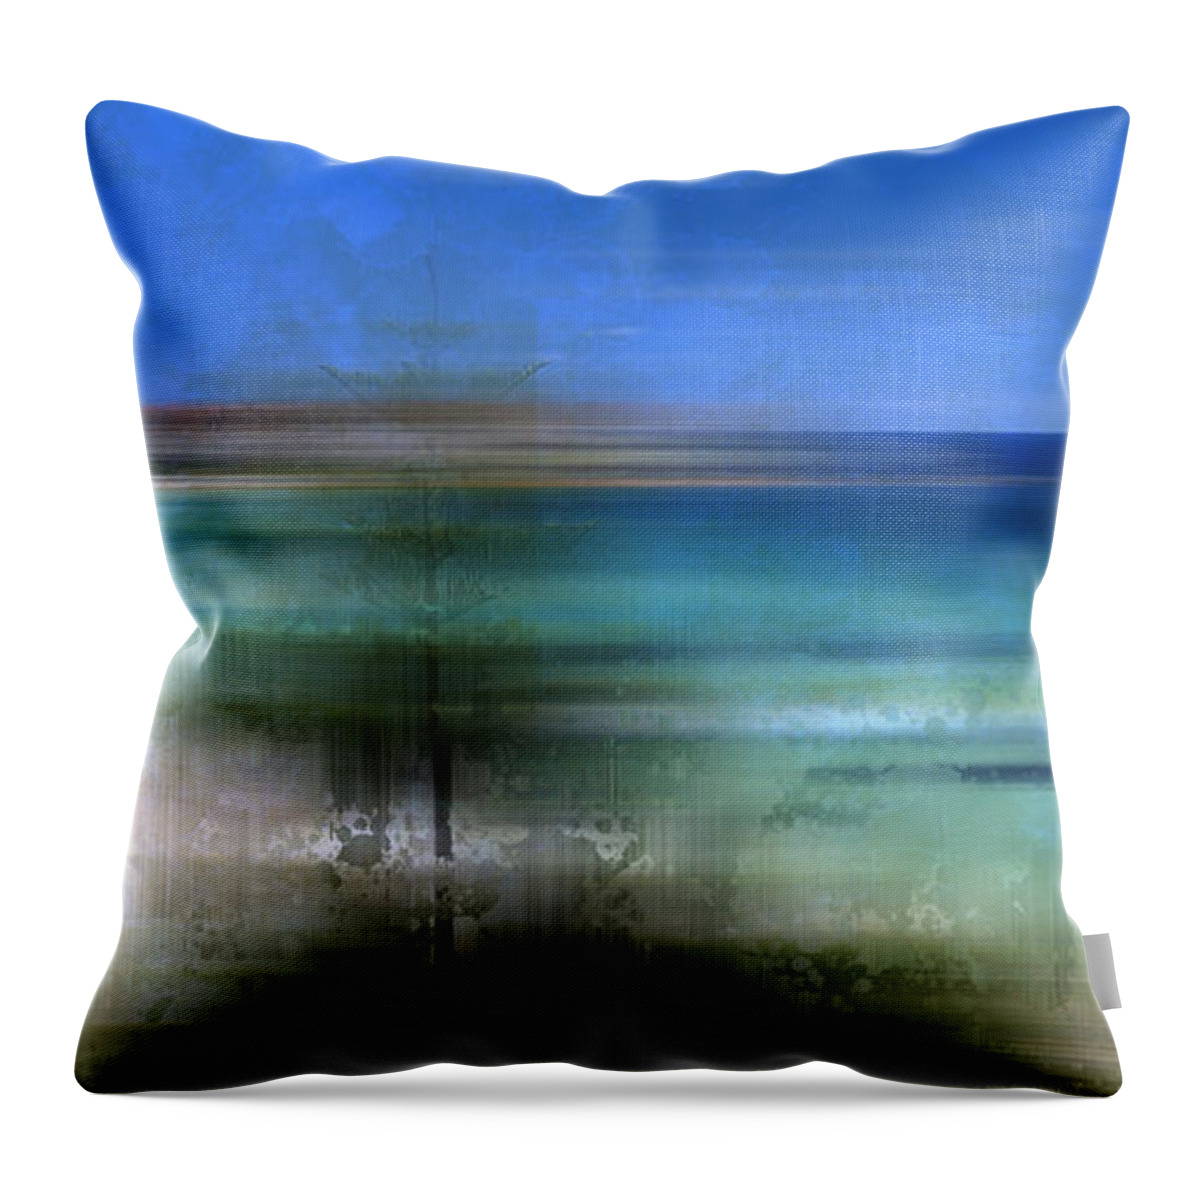 Australia Throw Pillow featuring the photograph Modern-Art BONDI BEACH by Melanie Viola